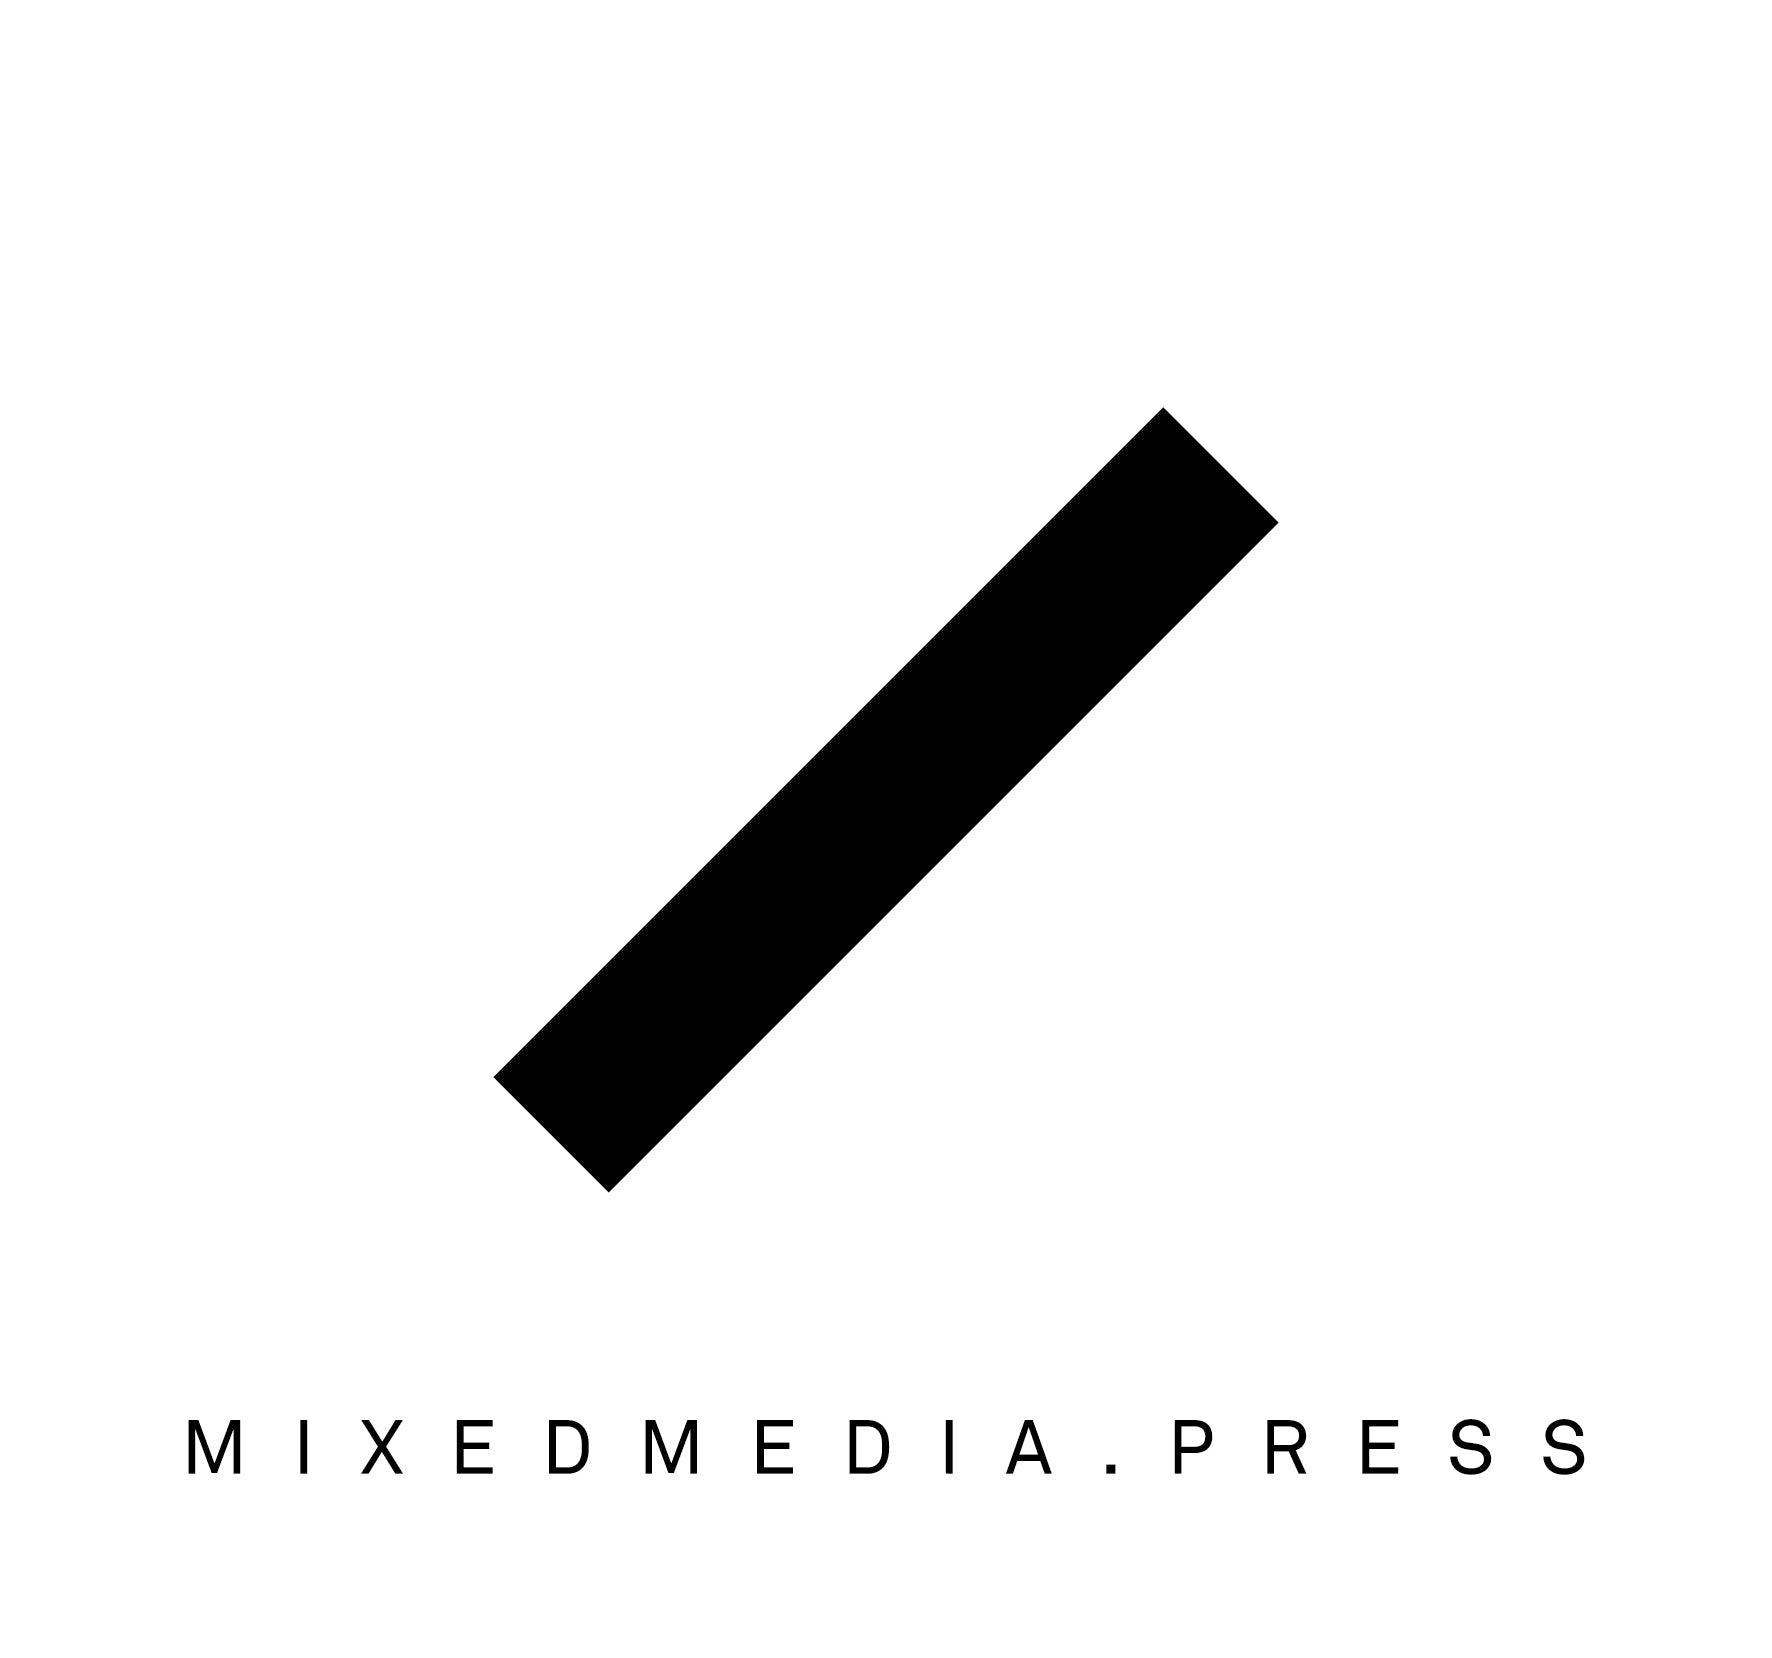 Mixedmedia.press